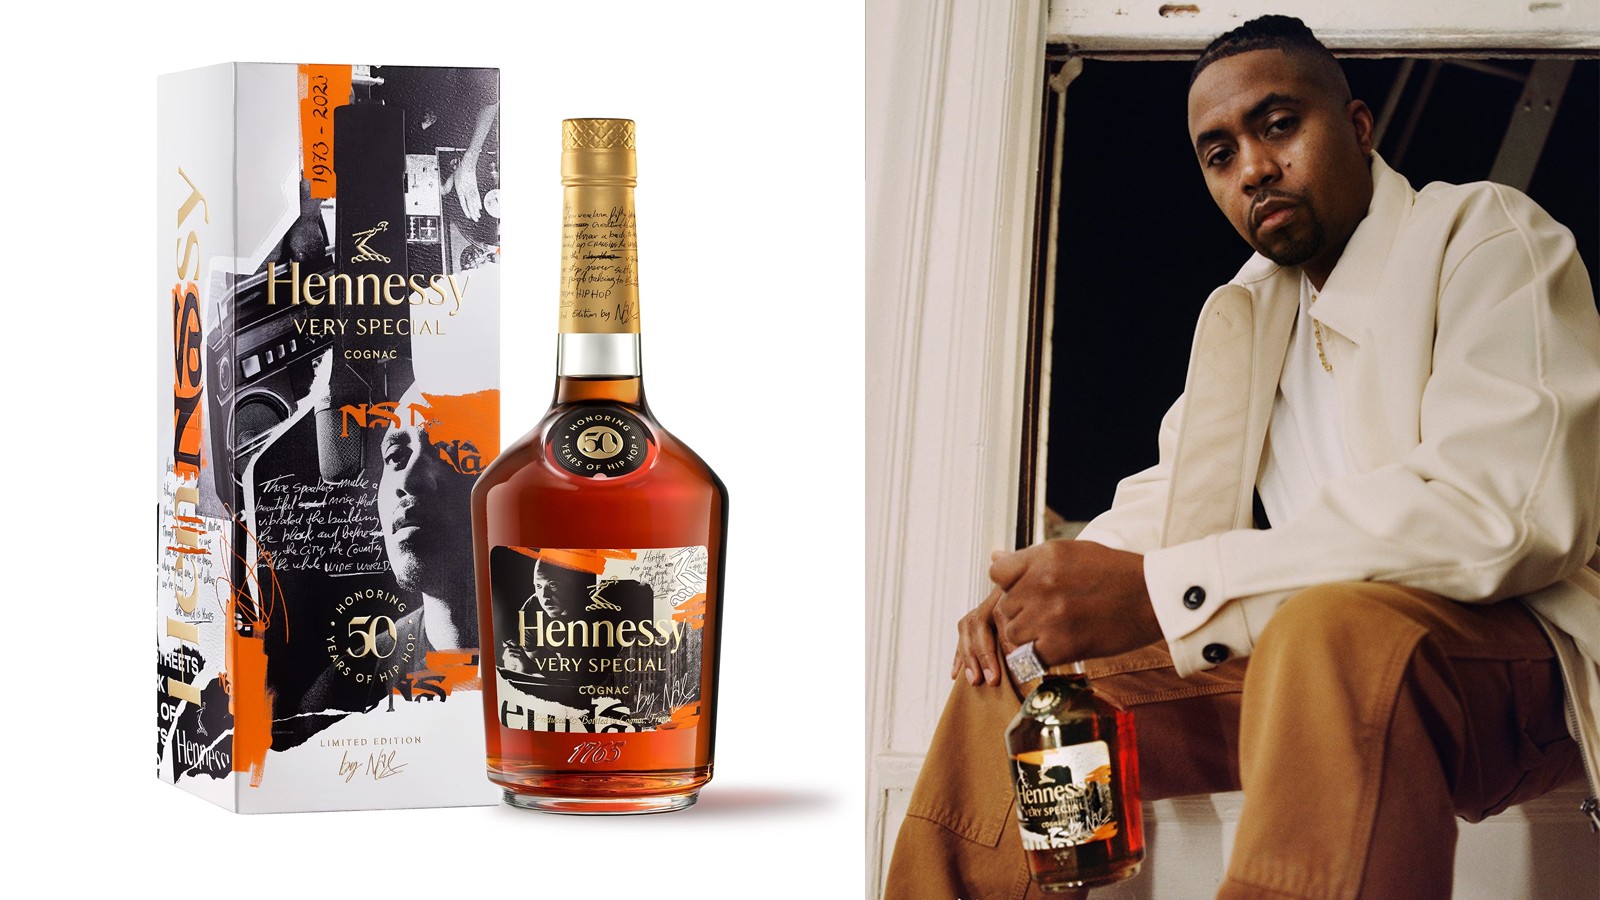 Rapper Nas ra mắt phiên bản giới hạn rượu Hennessy kỷ niệm 50 năm Hip Hop